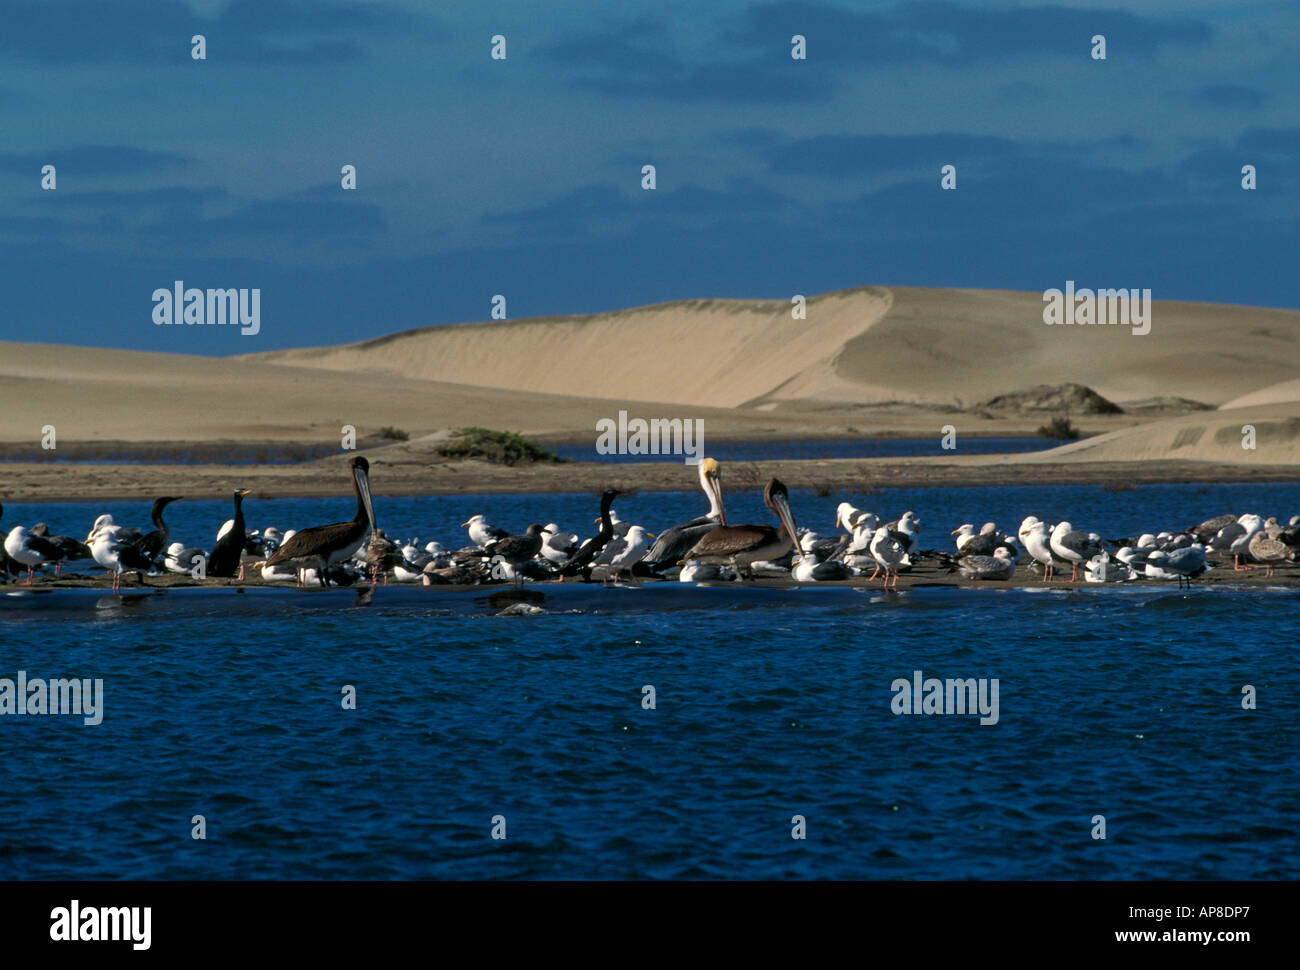 pelicans, cormorants, seagulls, seabirds, waterbirds, migratory birds, aquatic birds, wildlife, Magdalena Bay, Baja California Sur State, Mexico Stock Photo